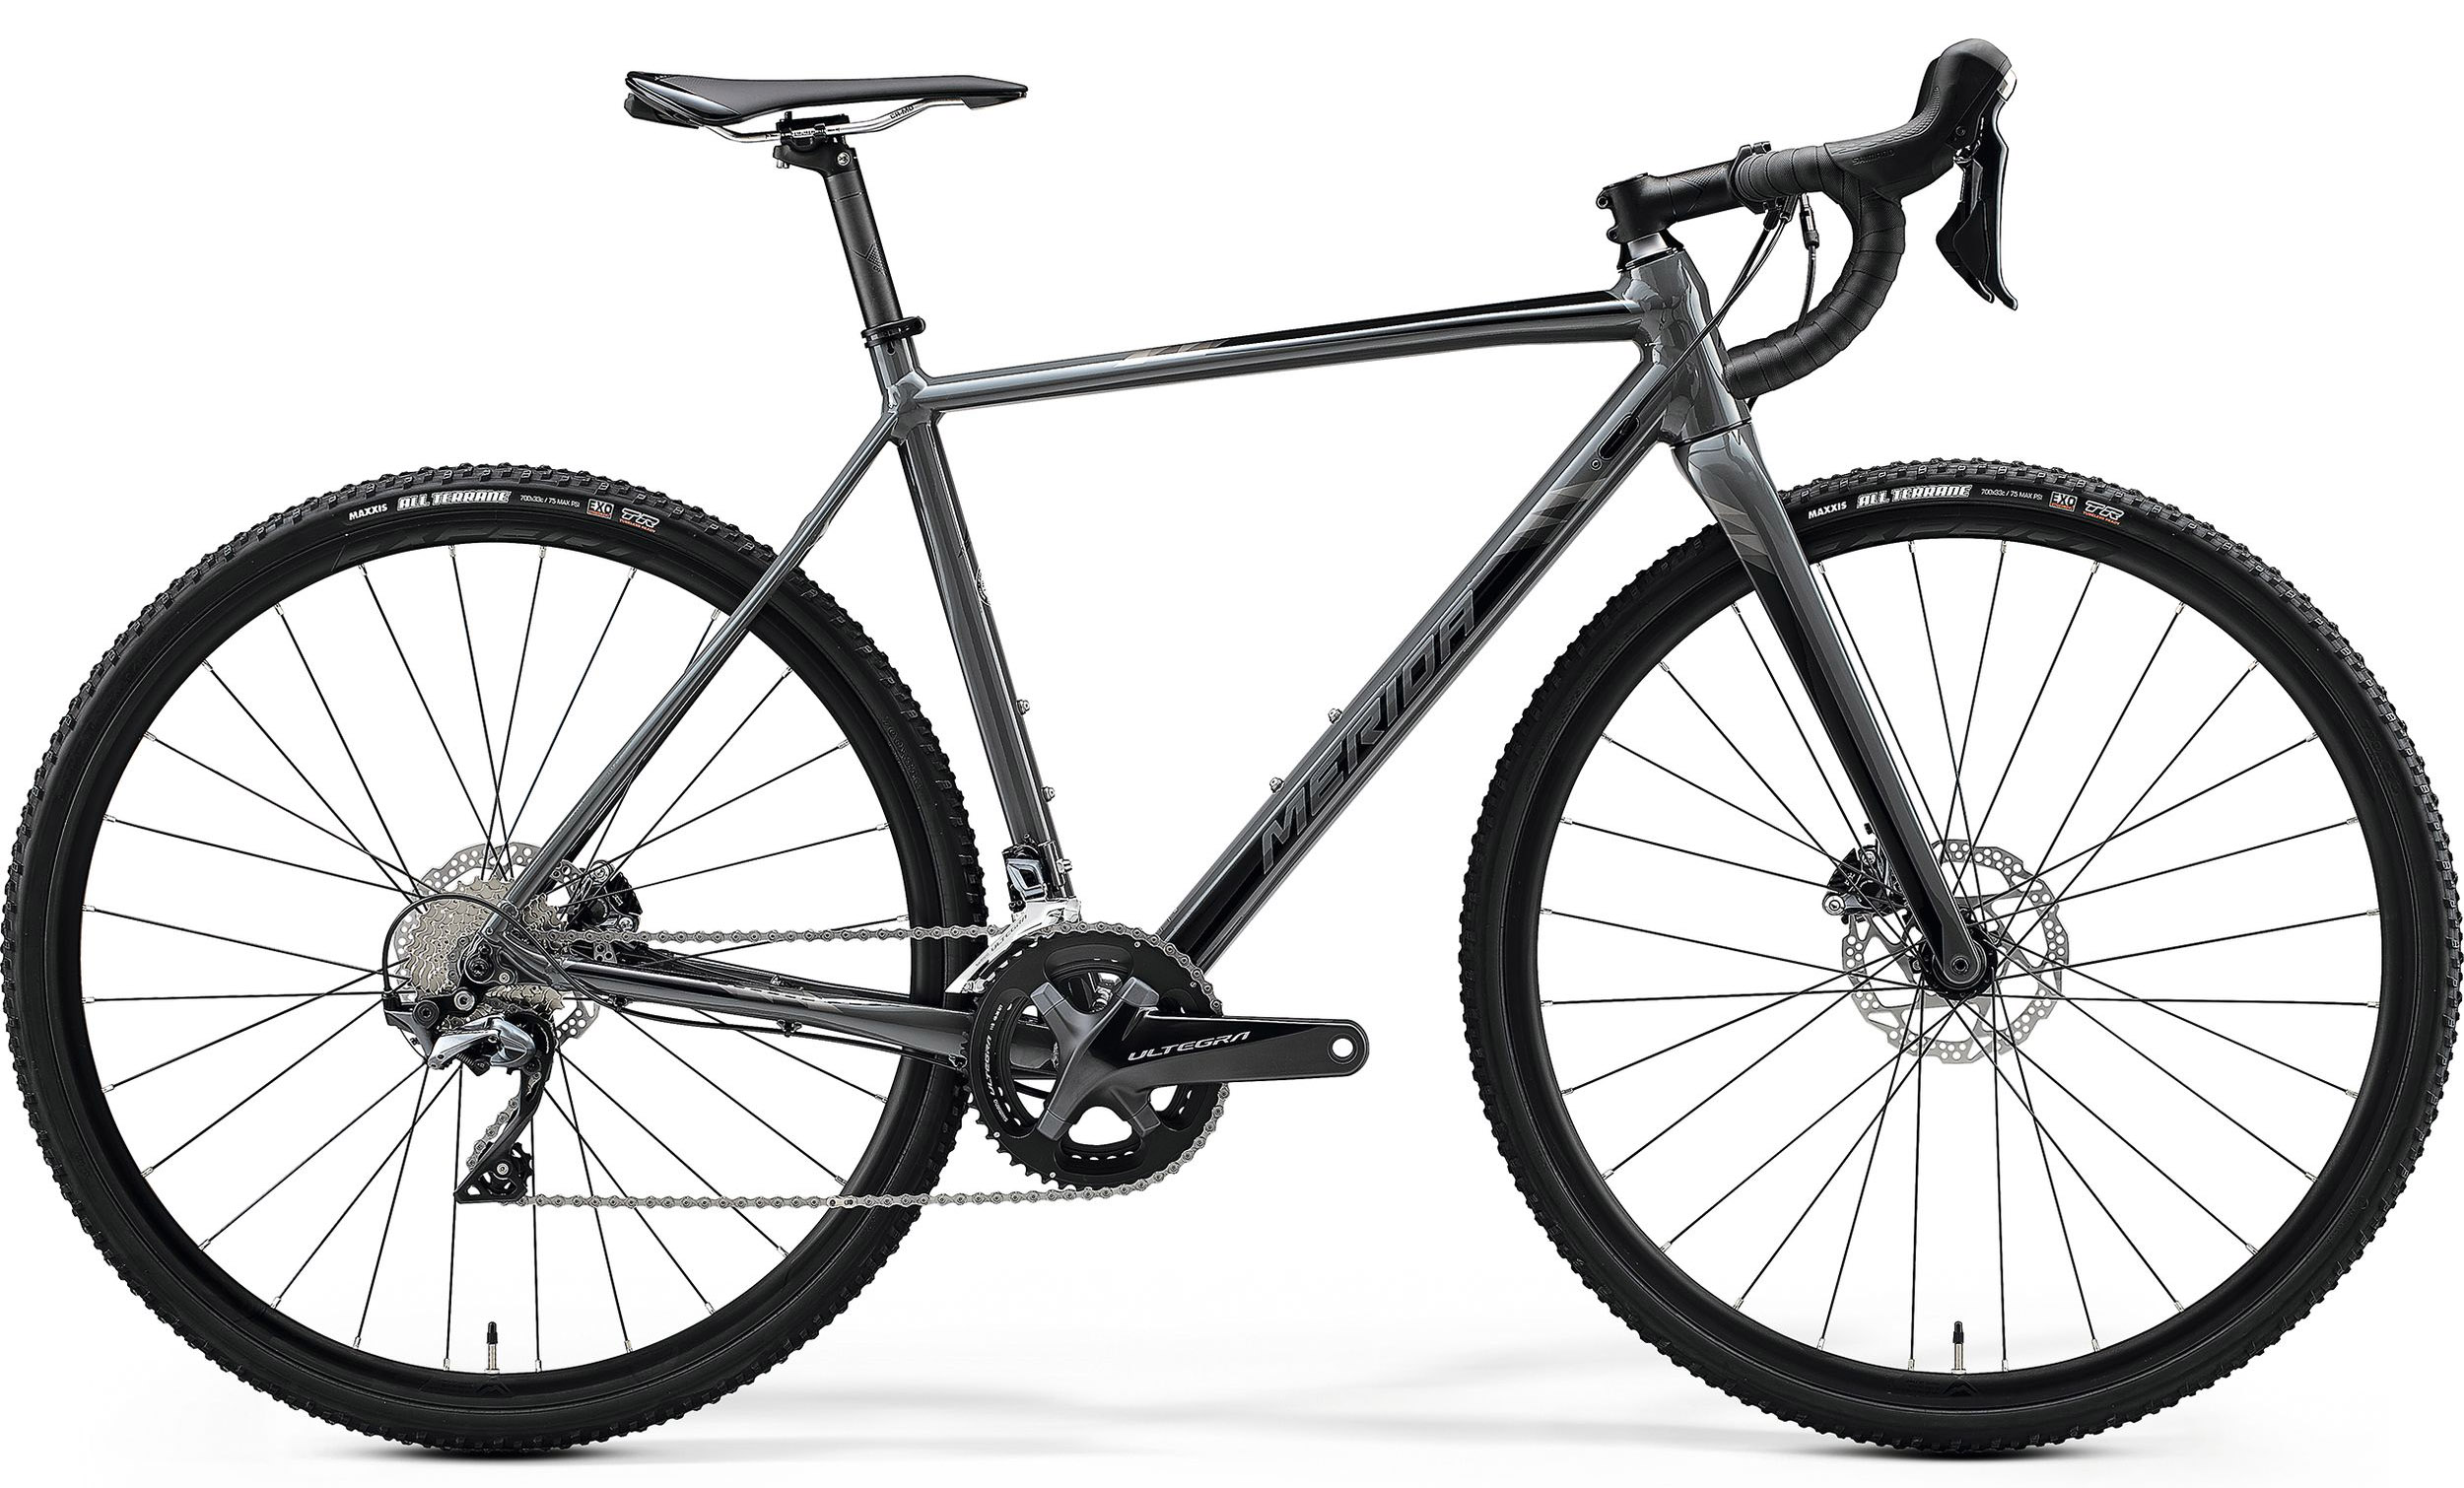  Отзывы о Шоссейном велосипеде Merida Mission CX700 2020